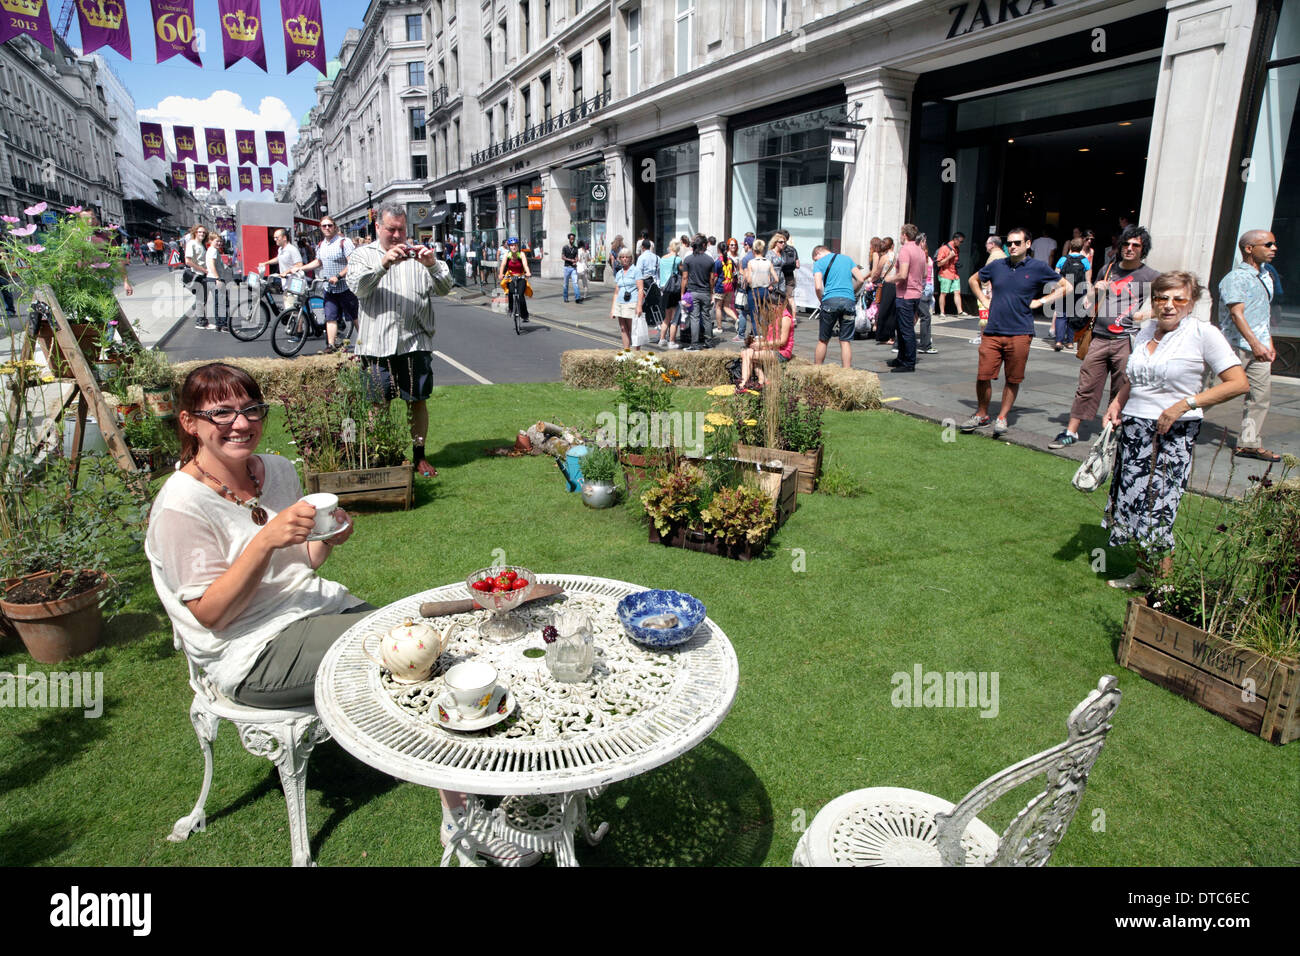 Rachel Parker Soden enjoys a cup of tea in her pop-up garden in London's Regent Street on 28 July 2013. [Event described below] Stock Photo